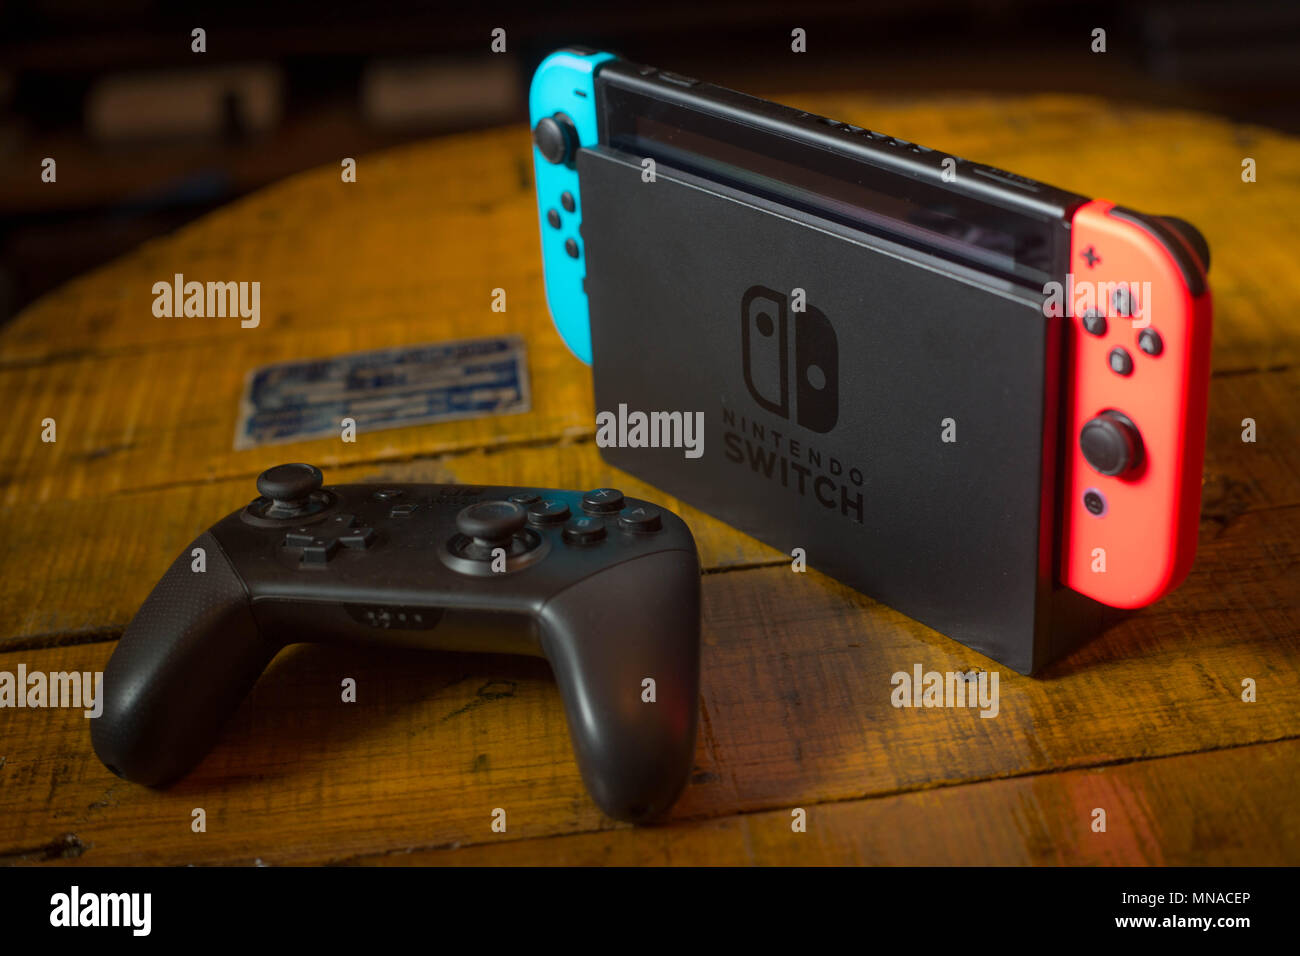 Seria o Nintendo Switch o melhor console retrô da atualidade?